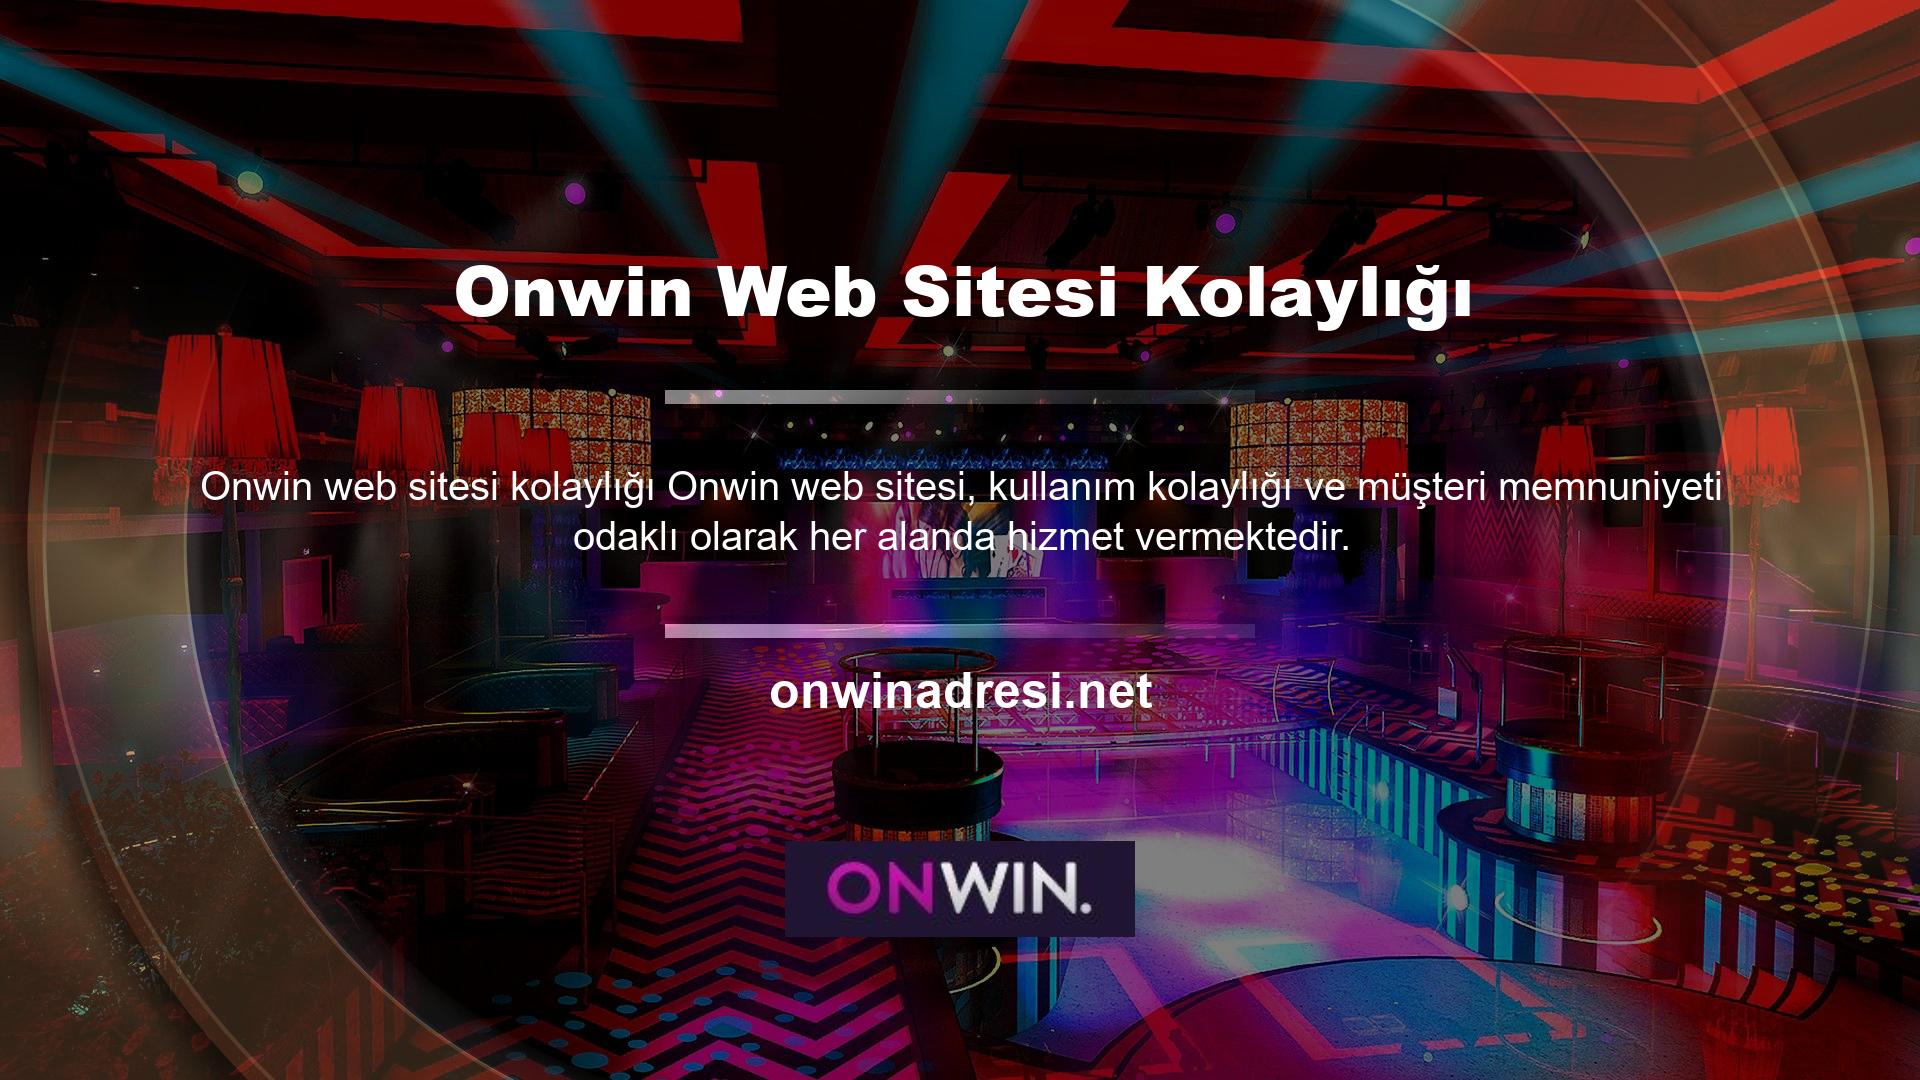 Hatta Onwin sitesinde yer alan içerikleri kullanmak isteyen herkes üye olmak ve siteyi kullanmaya başlamak istemektedir